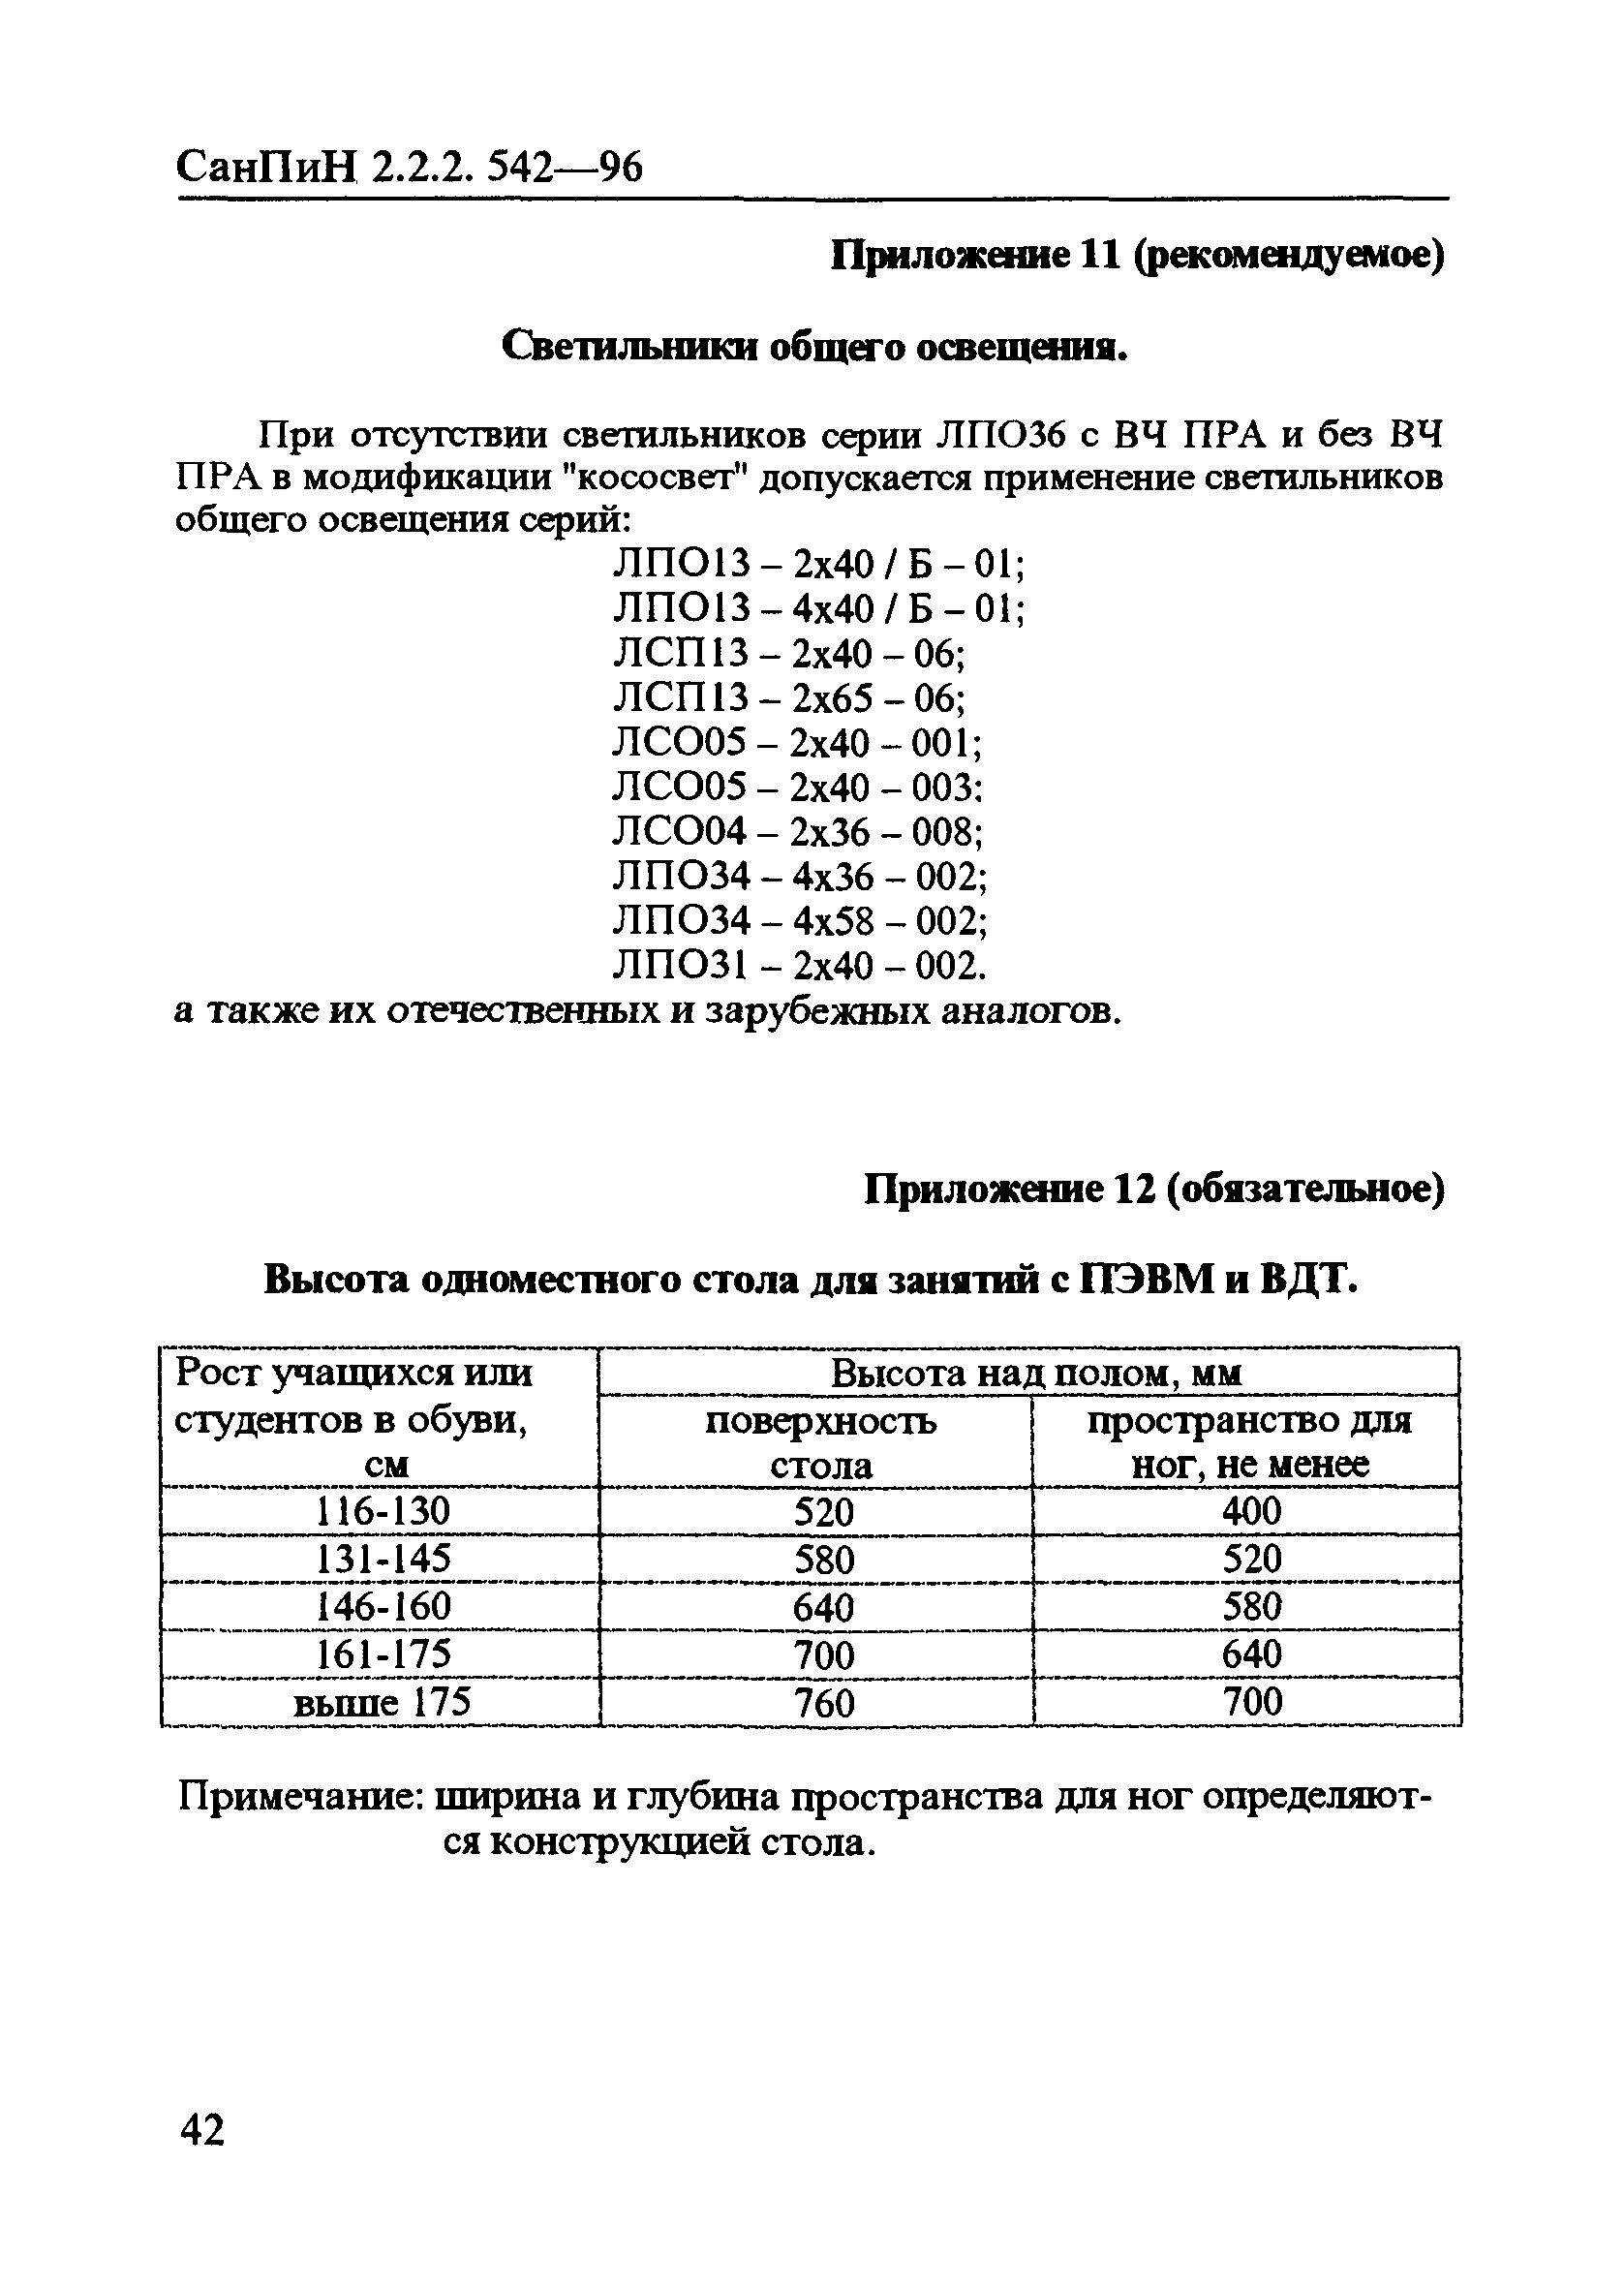 СН 2.2.2.542-96